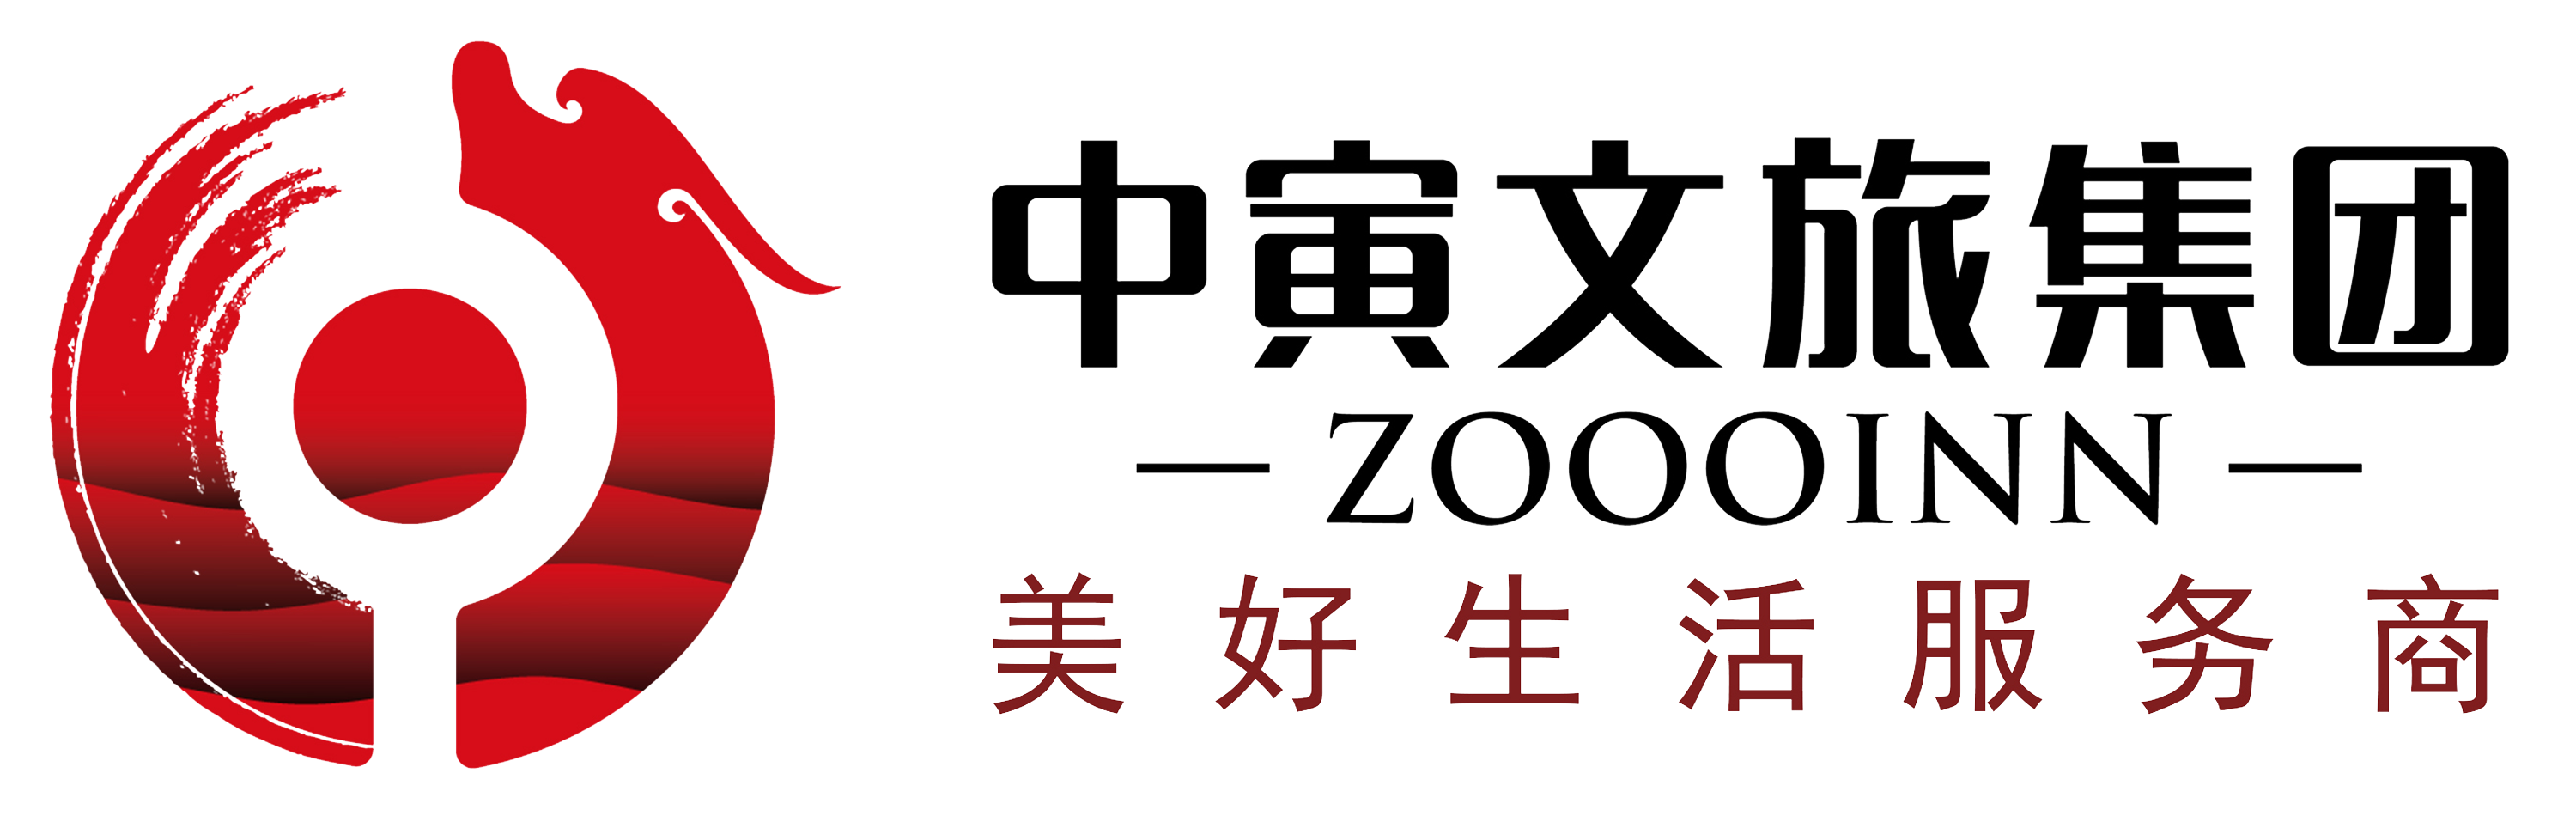 2000 x 2000